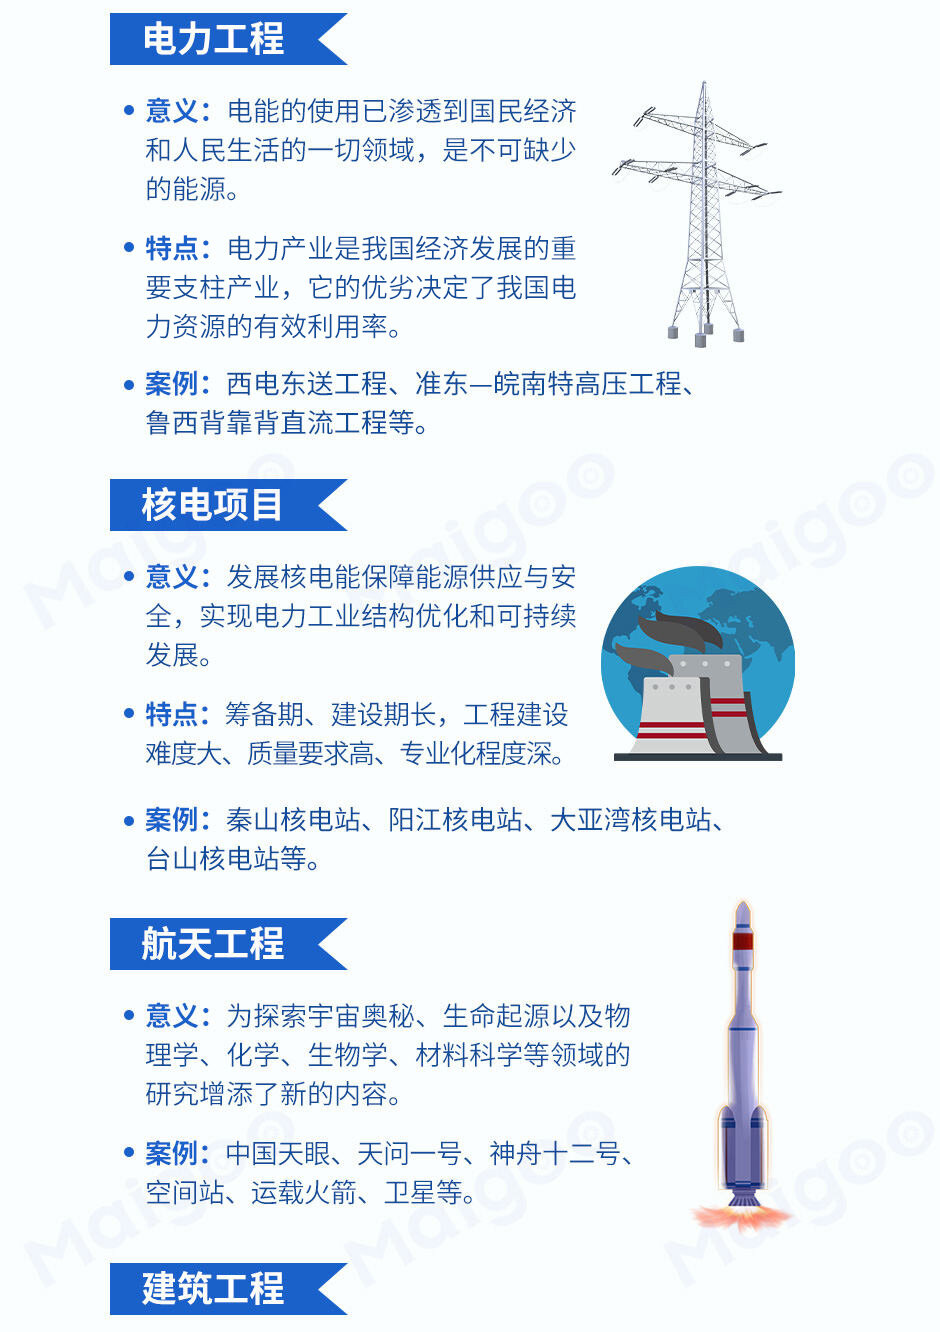 中國電力超級工程,中國核電超級工程,中國航天超級工程